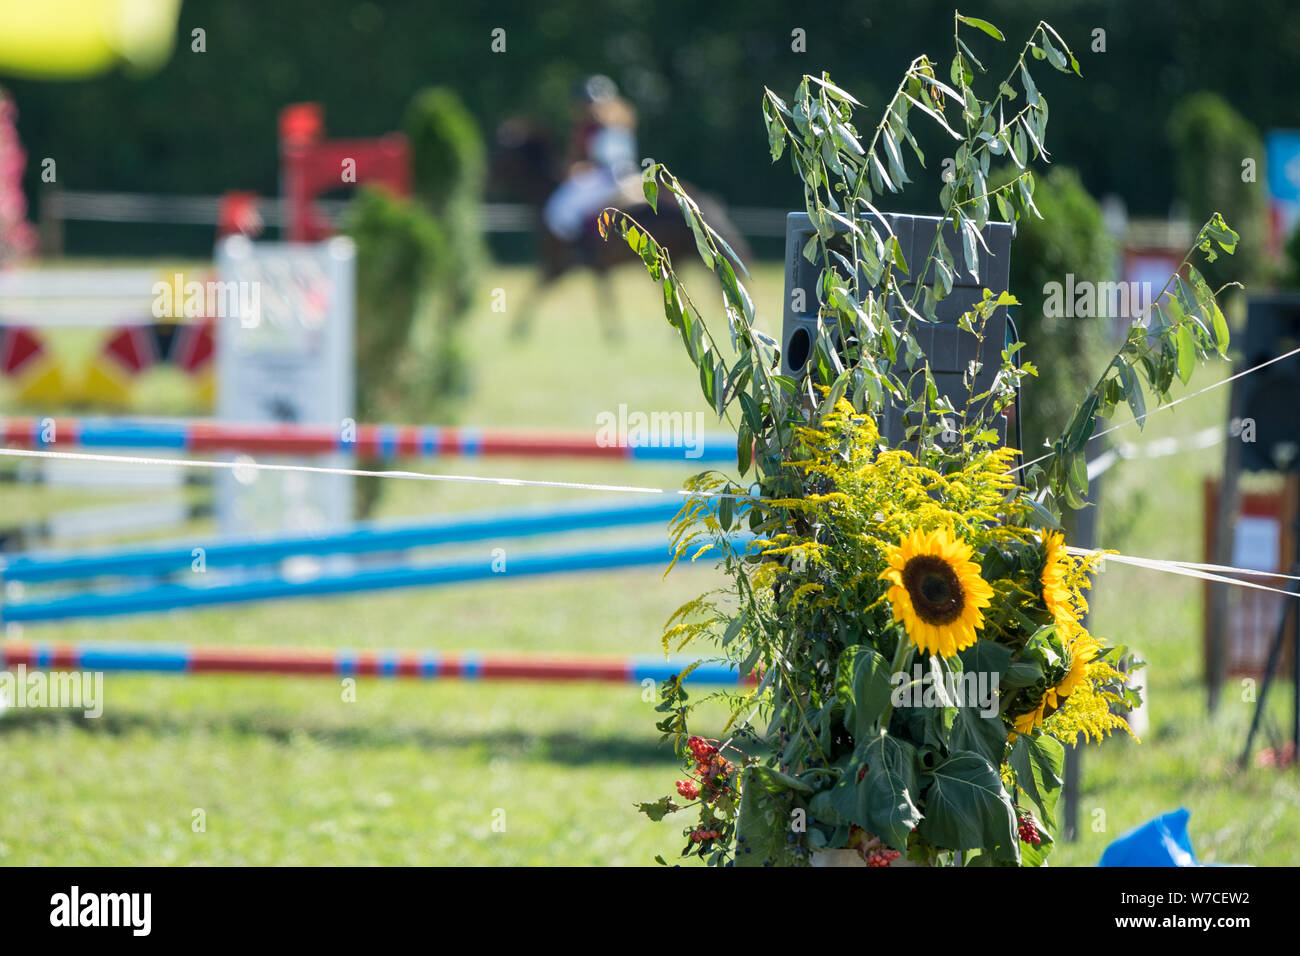 Pferdesporttage Deisswil - fleurs en face d'une scène équestre floue avec un cours de saut et d'un rider en action Banque D'Images